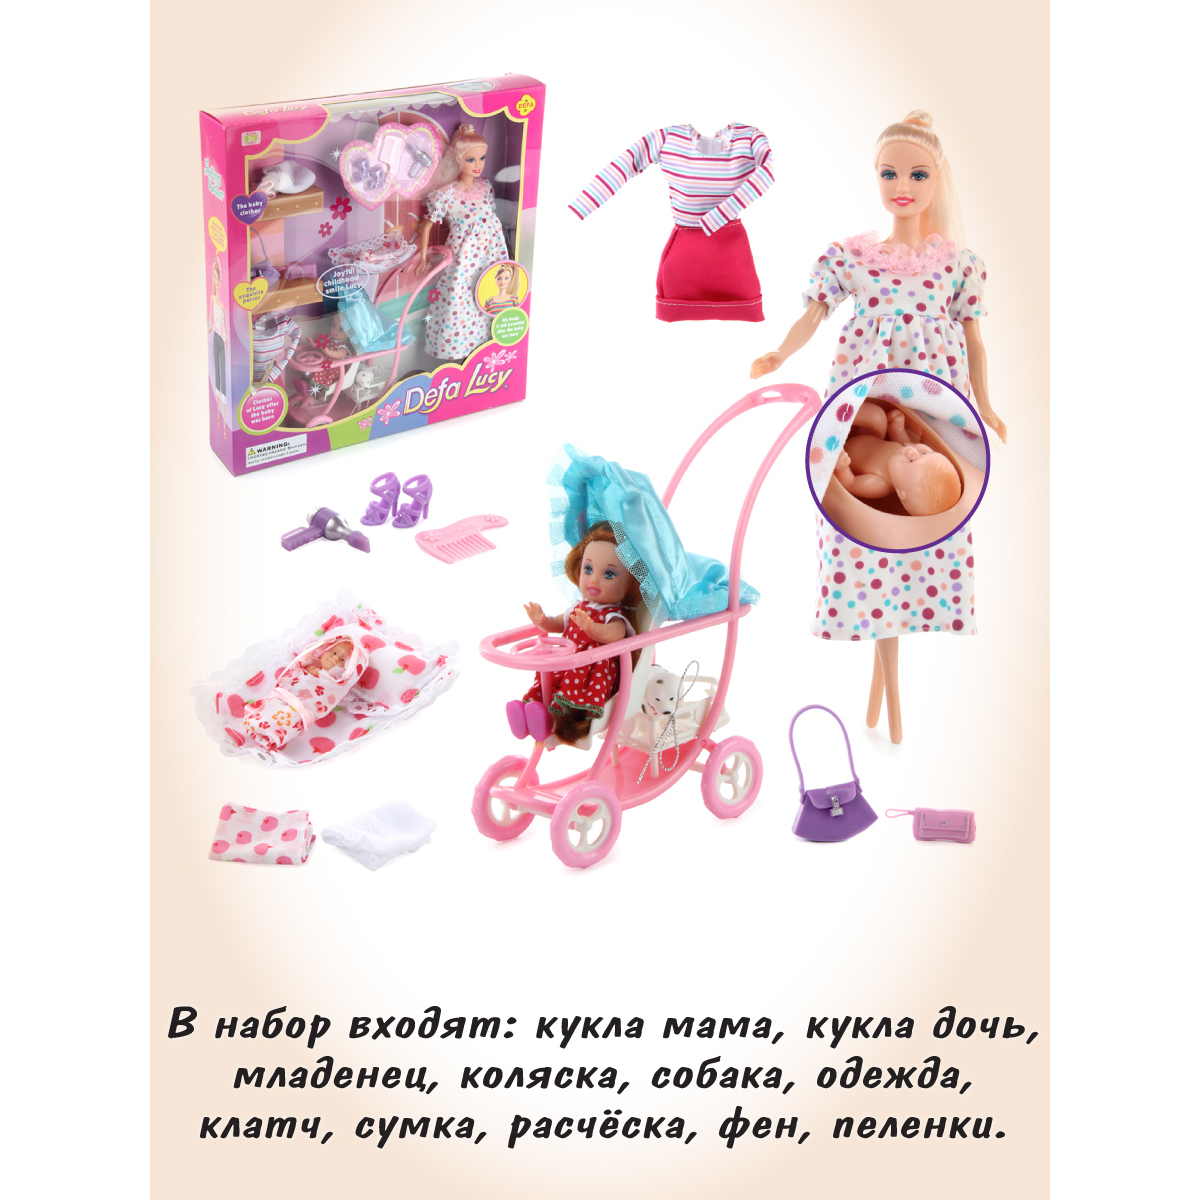 Кукла модель Барби Veld Co мама с детьми 125544 - фото 6